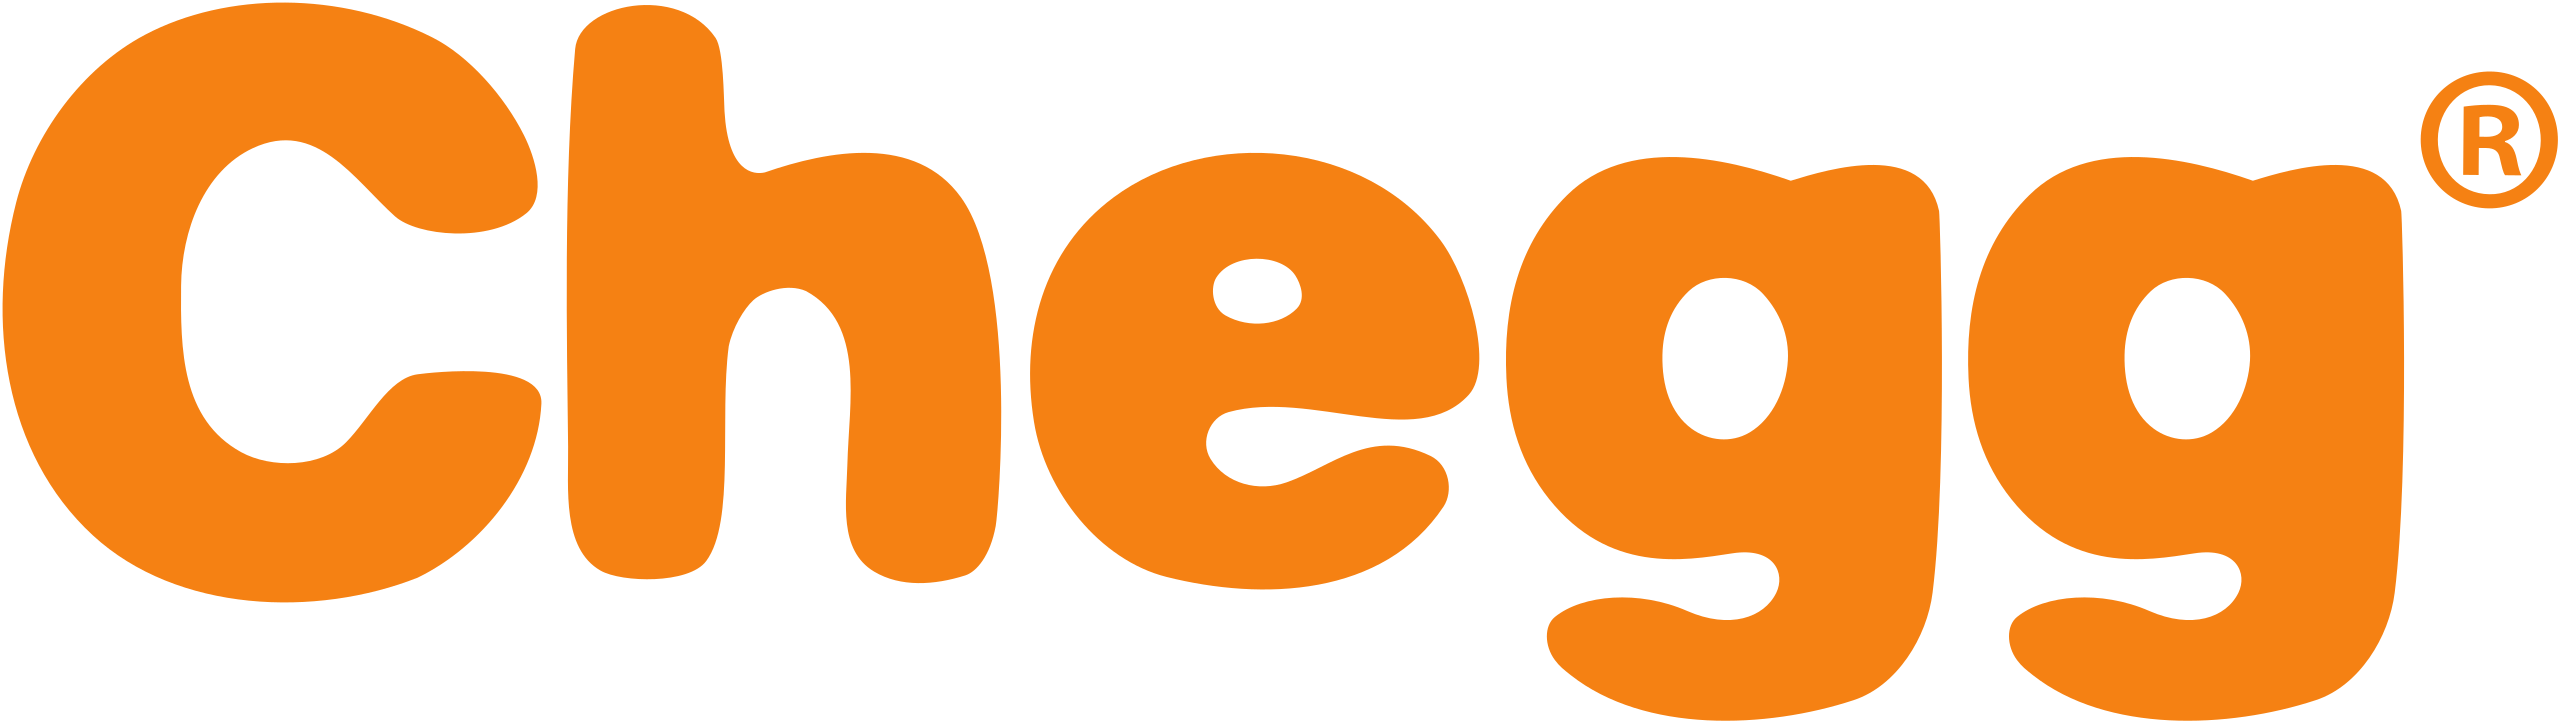 2560px-Chegg logo.svg